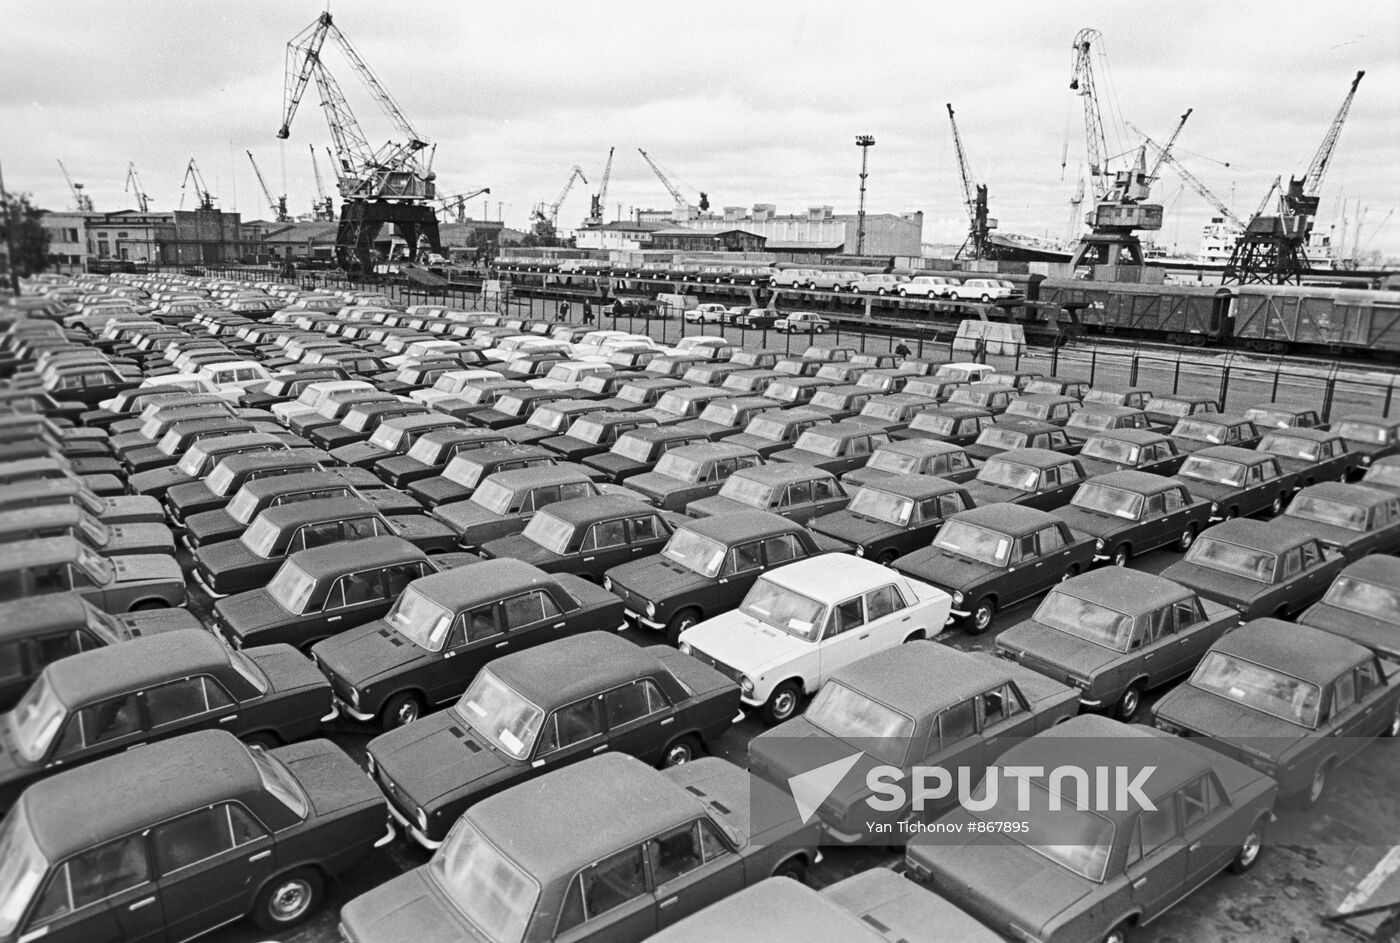 Riga trade seaport